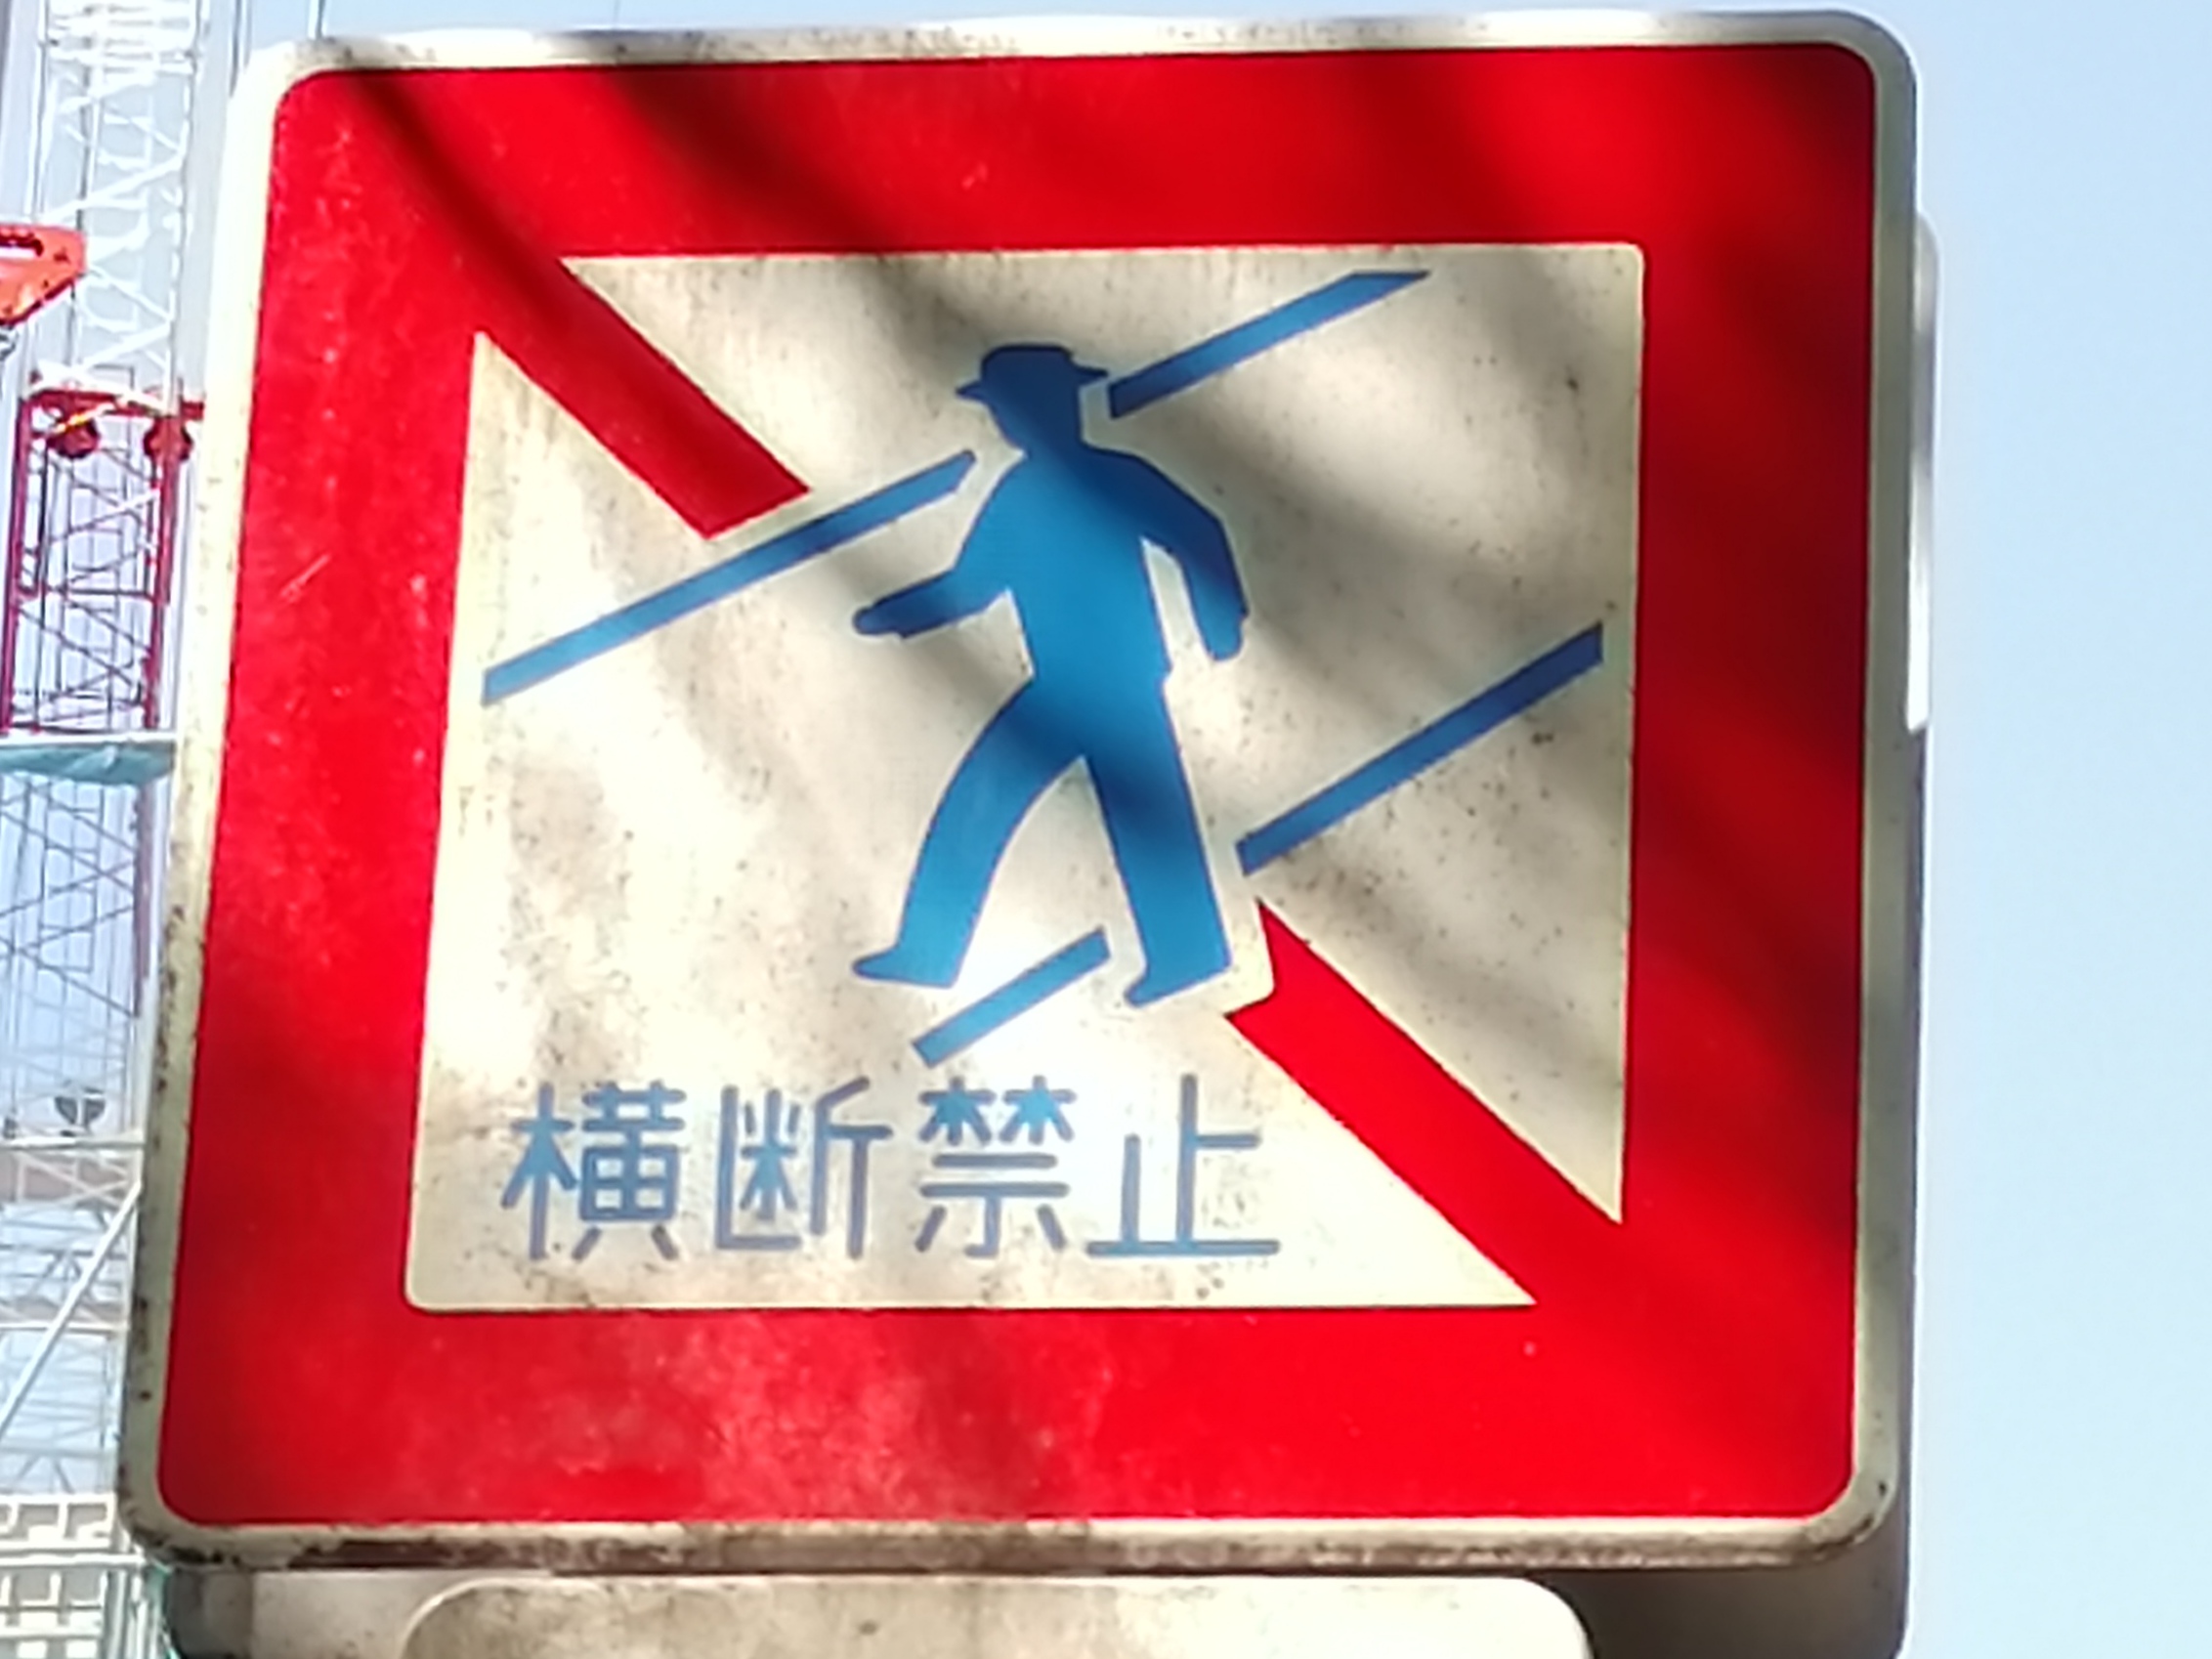 歩行者横断禁止 道路標識wiki Atwiki アットウィキ